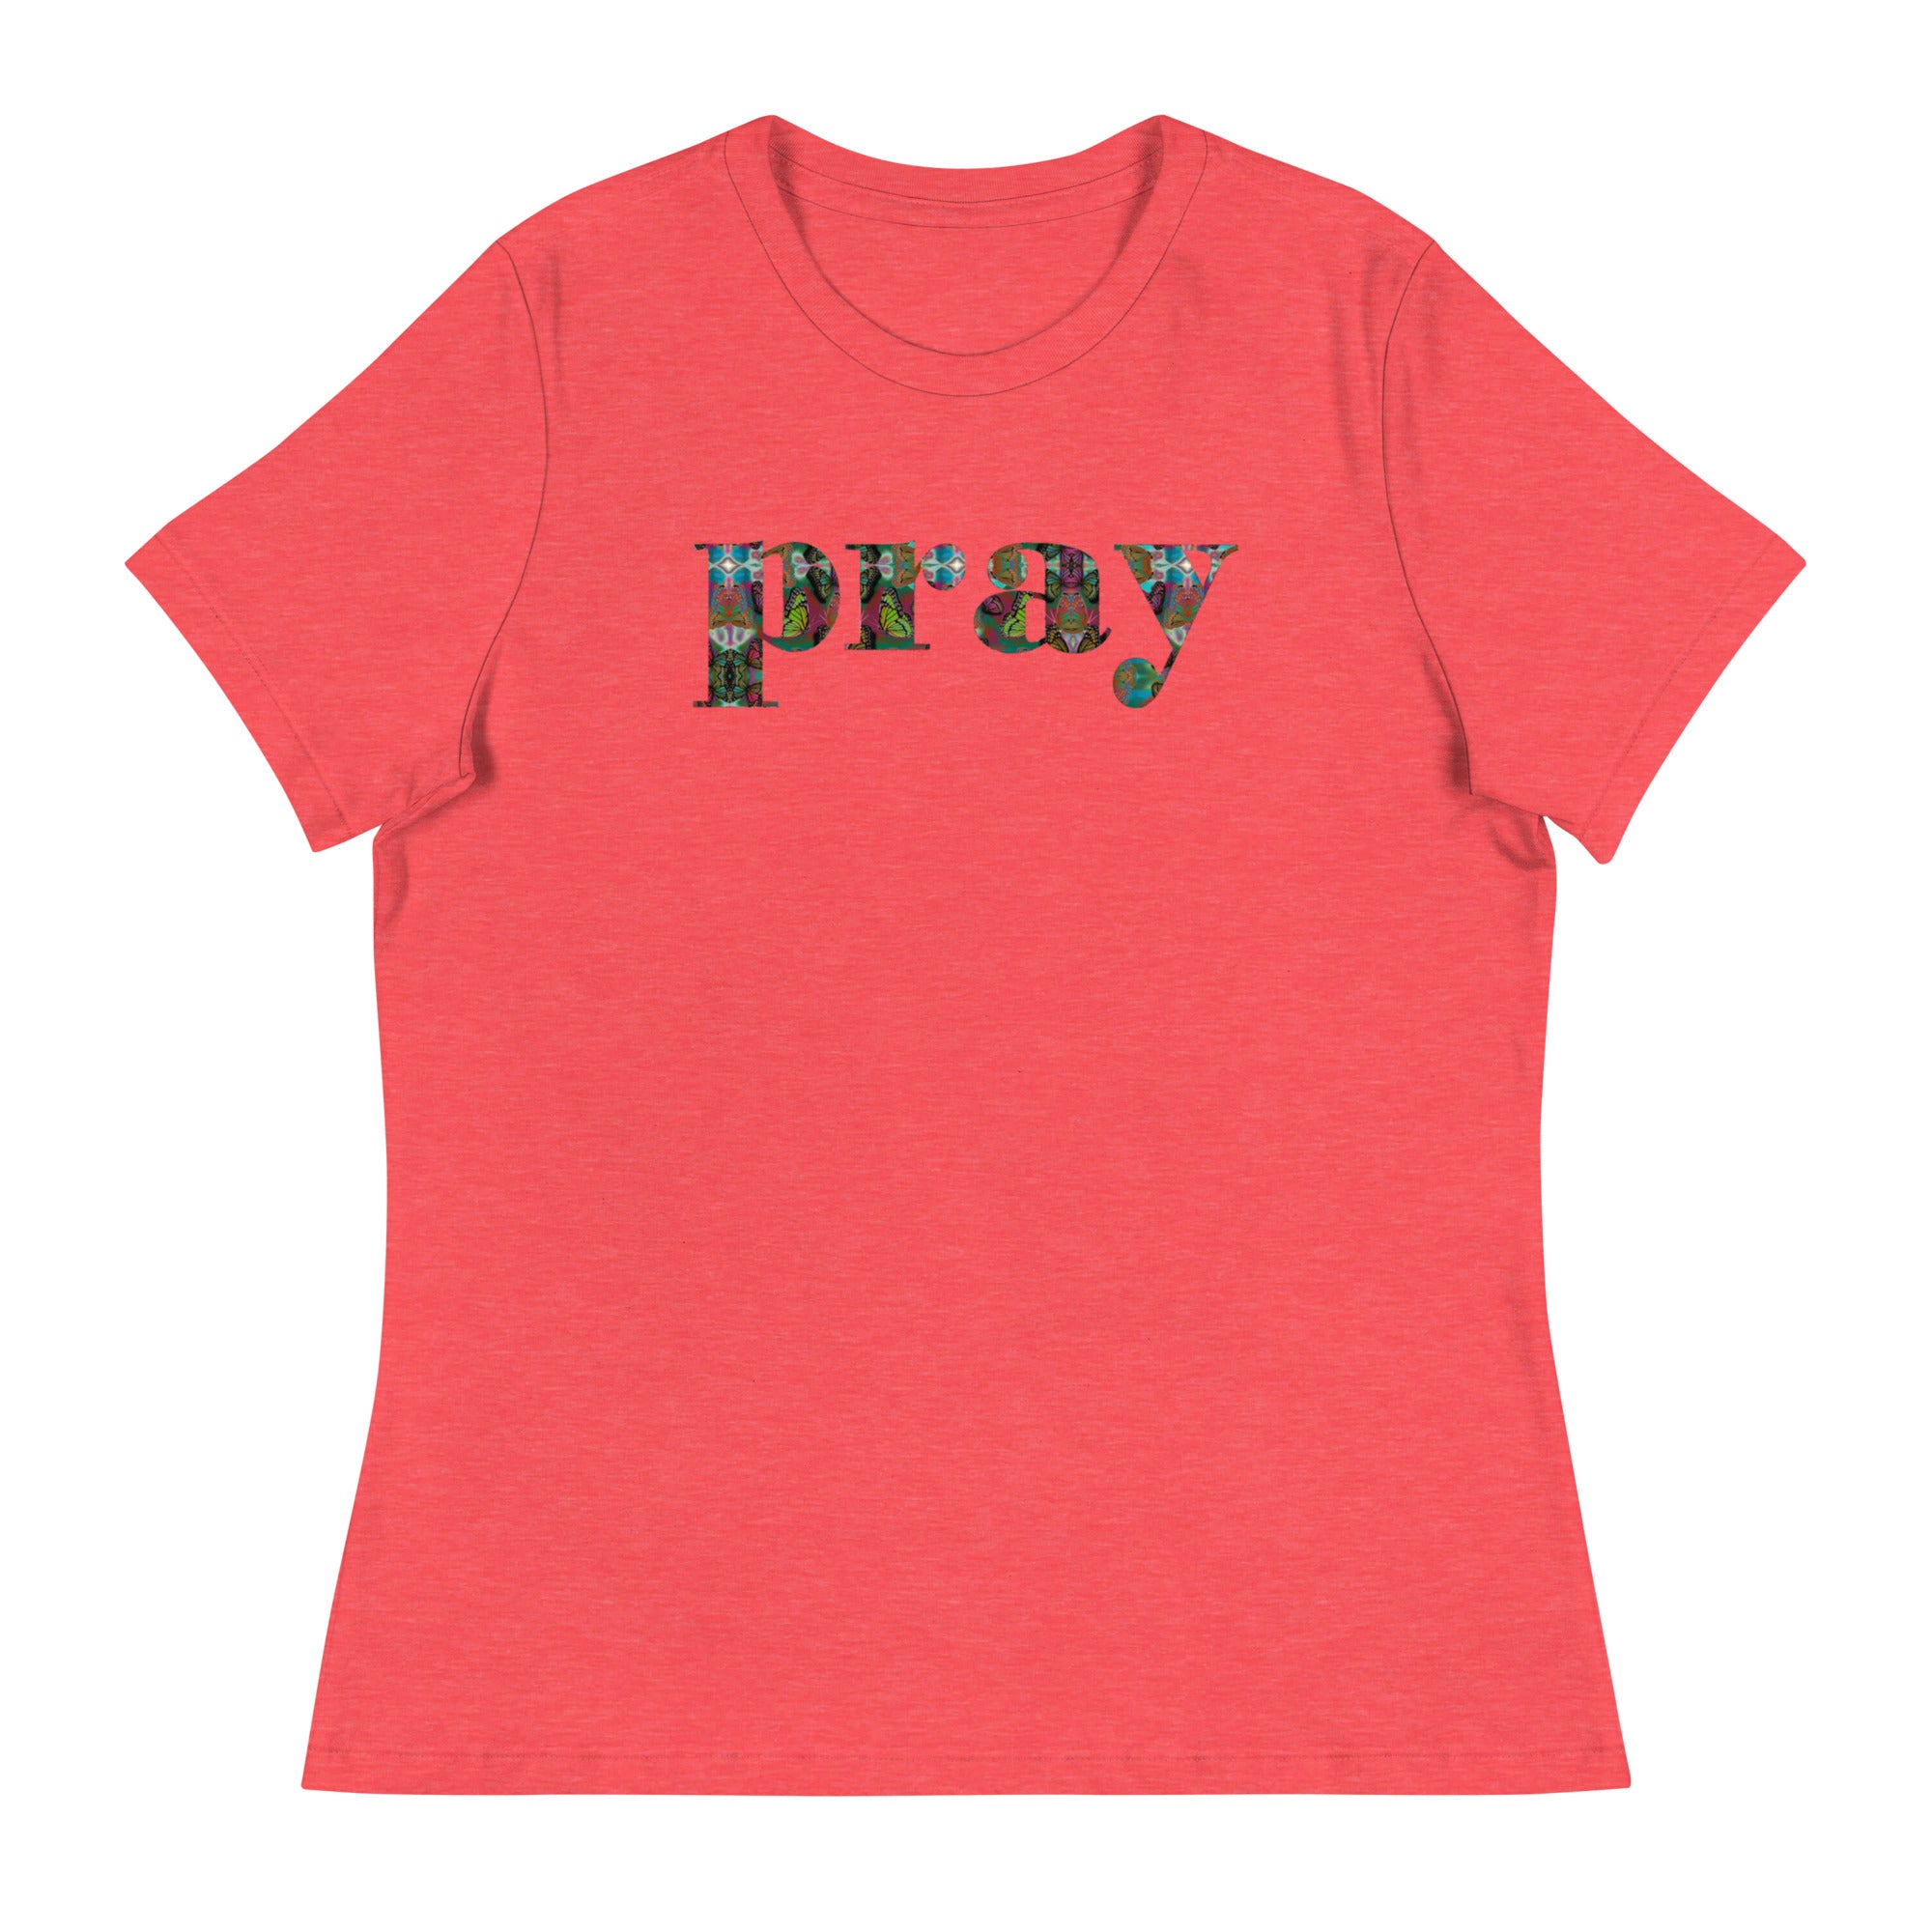 PRAY ~ Women's Butterfly Word Art Graphic T-Shirt, Short Sleeve Top